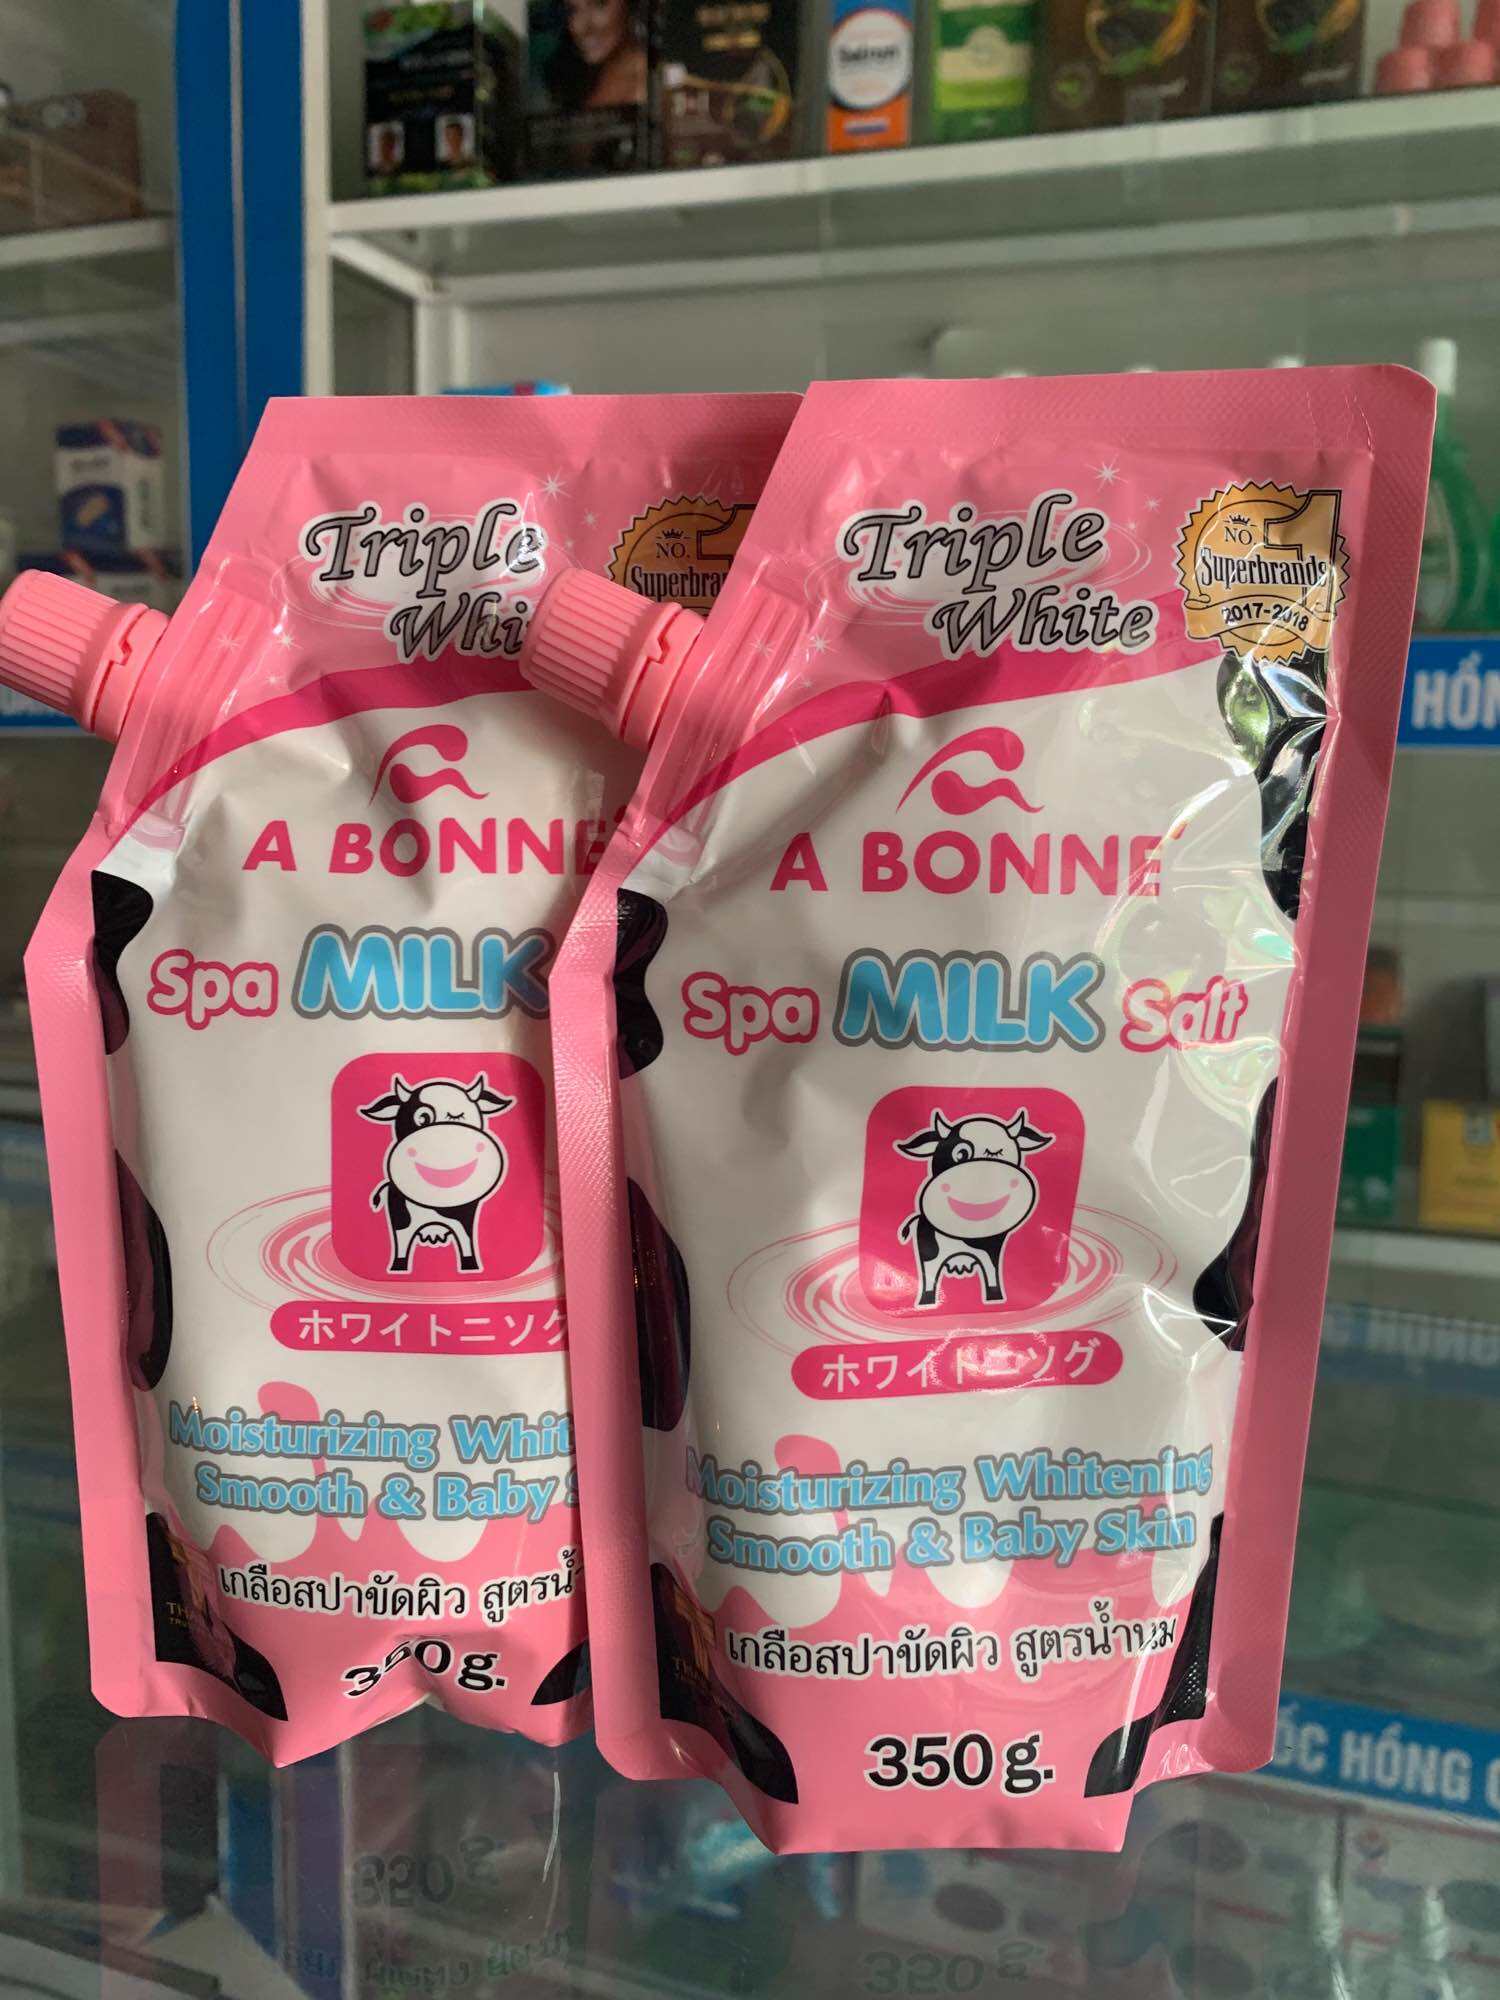 CHÍNH HÃNG Muối Tắm Sữa Bò Có Vòi A Bonne Spa Milk Salt 350g - Thái Lan